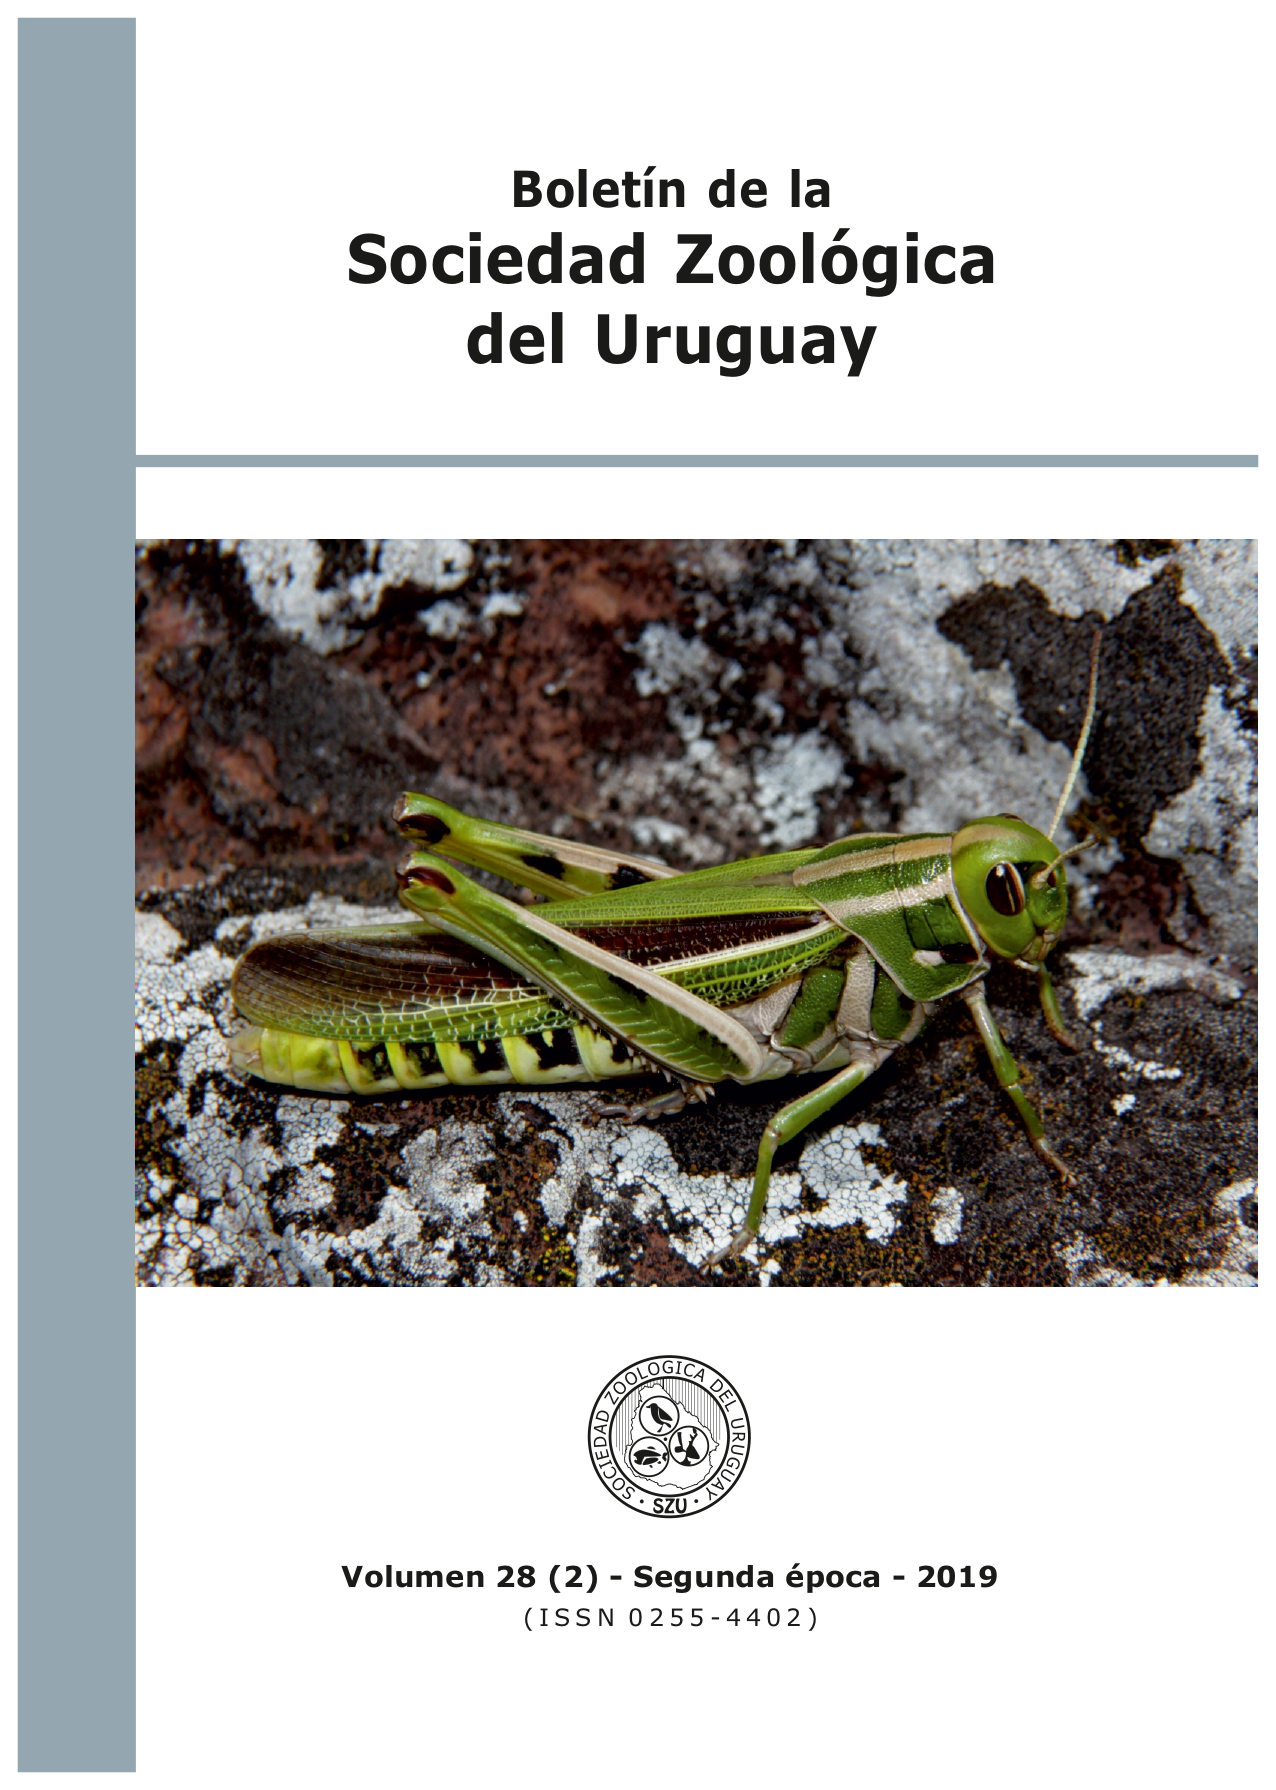 					View Vol. 28 No. 2 (2019): Boletín de la Sociedad Zoológica del Uruguay
				